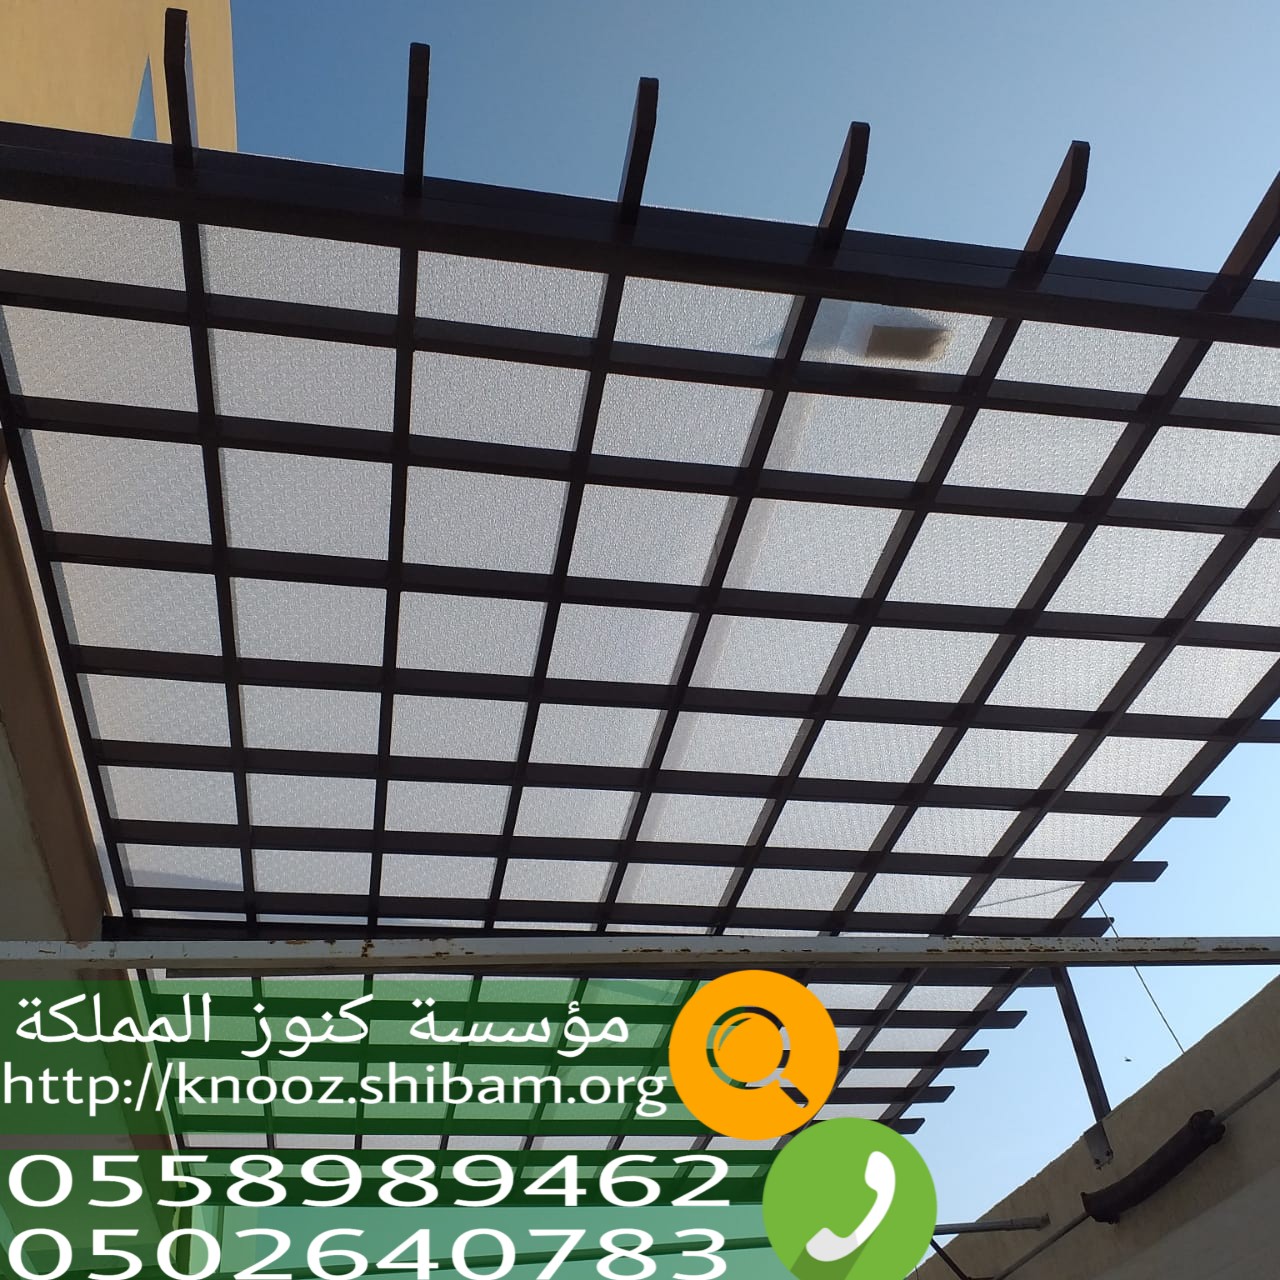 [تم الحل]ركة تركيب مظلات سيارات في الرياض , مظلات وسواتر الرياض , 0558989462 P_15147jx104